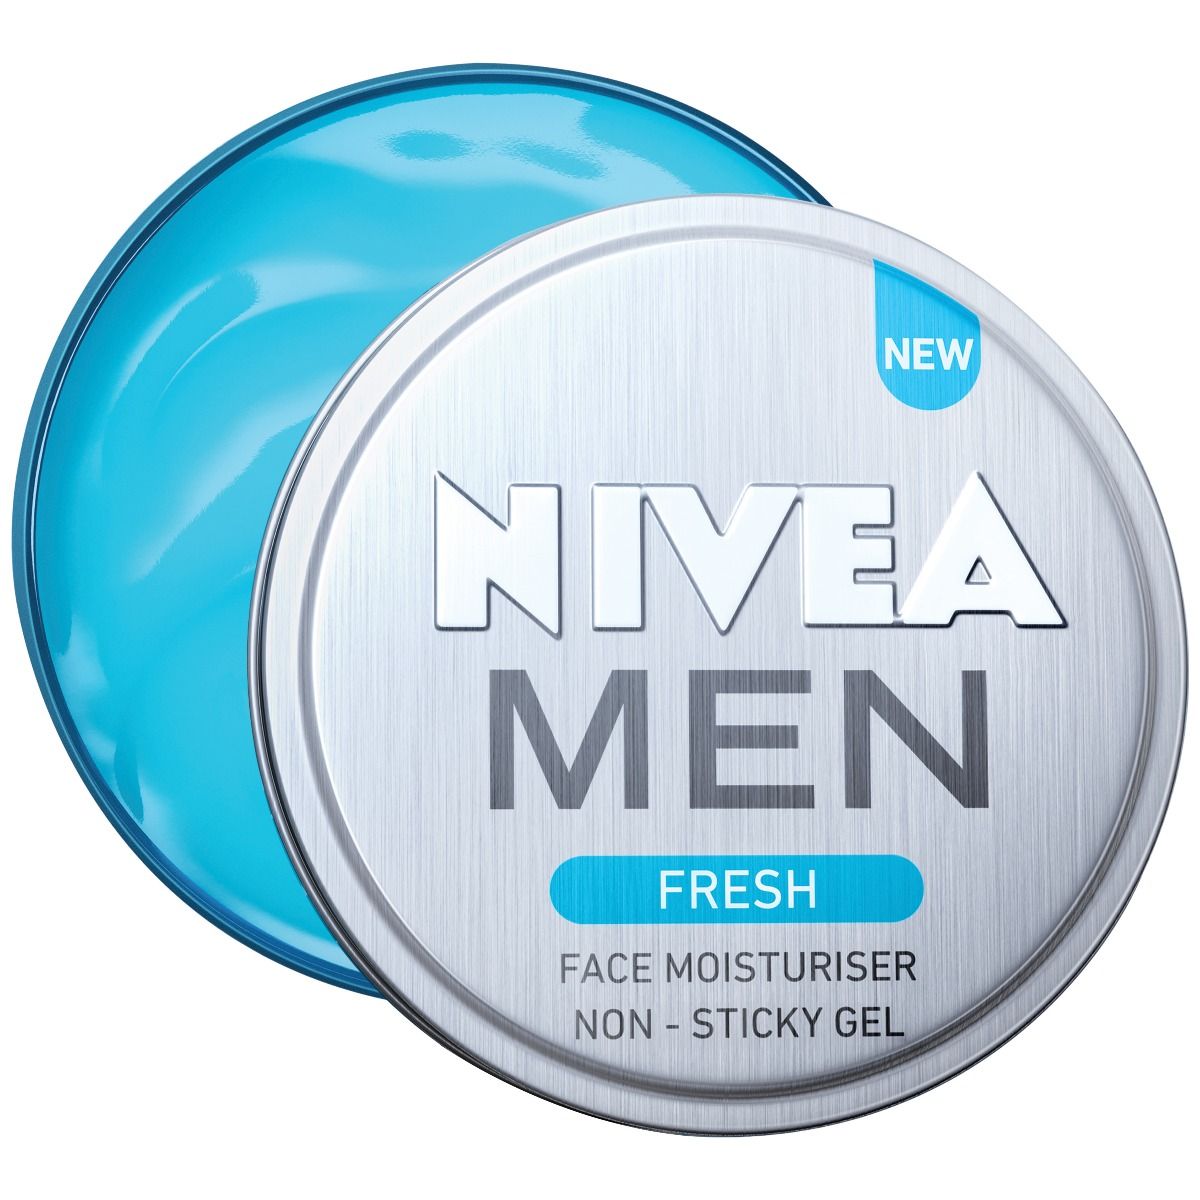 Buy Nivea Men Fresh Face Moisturiser Non - Sticky Gel, 30 ml Online